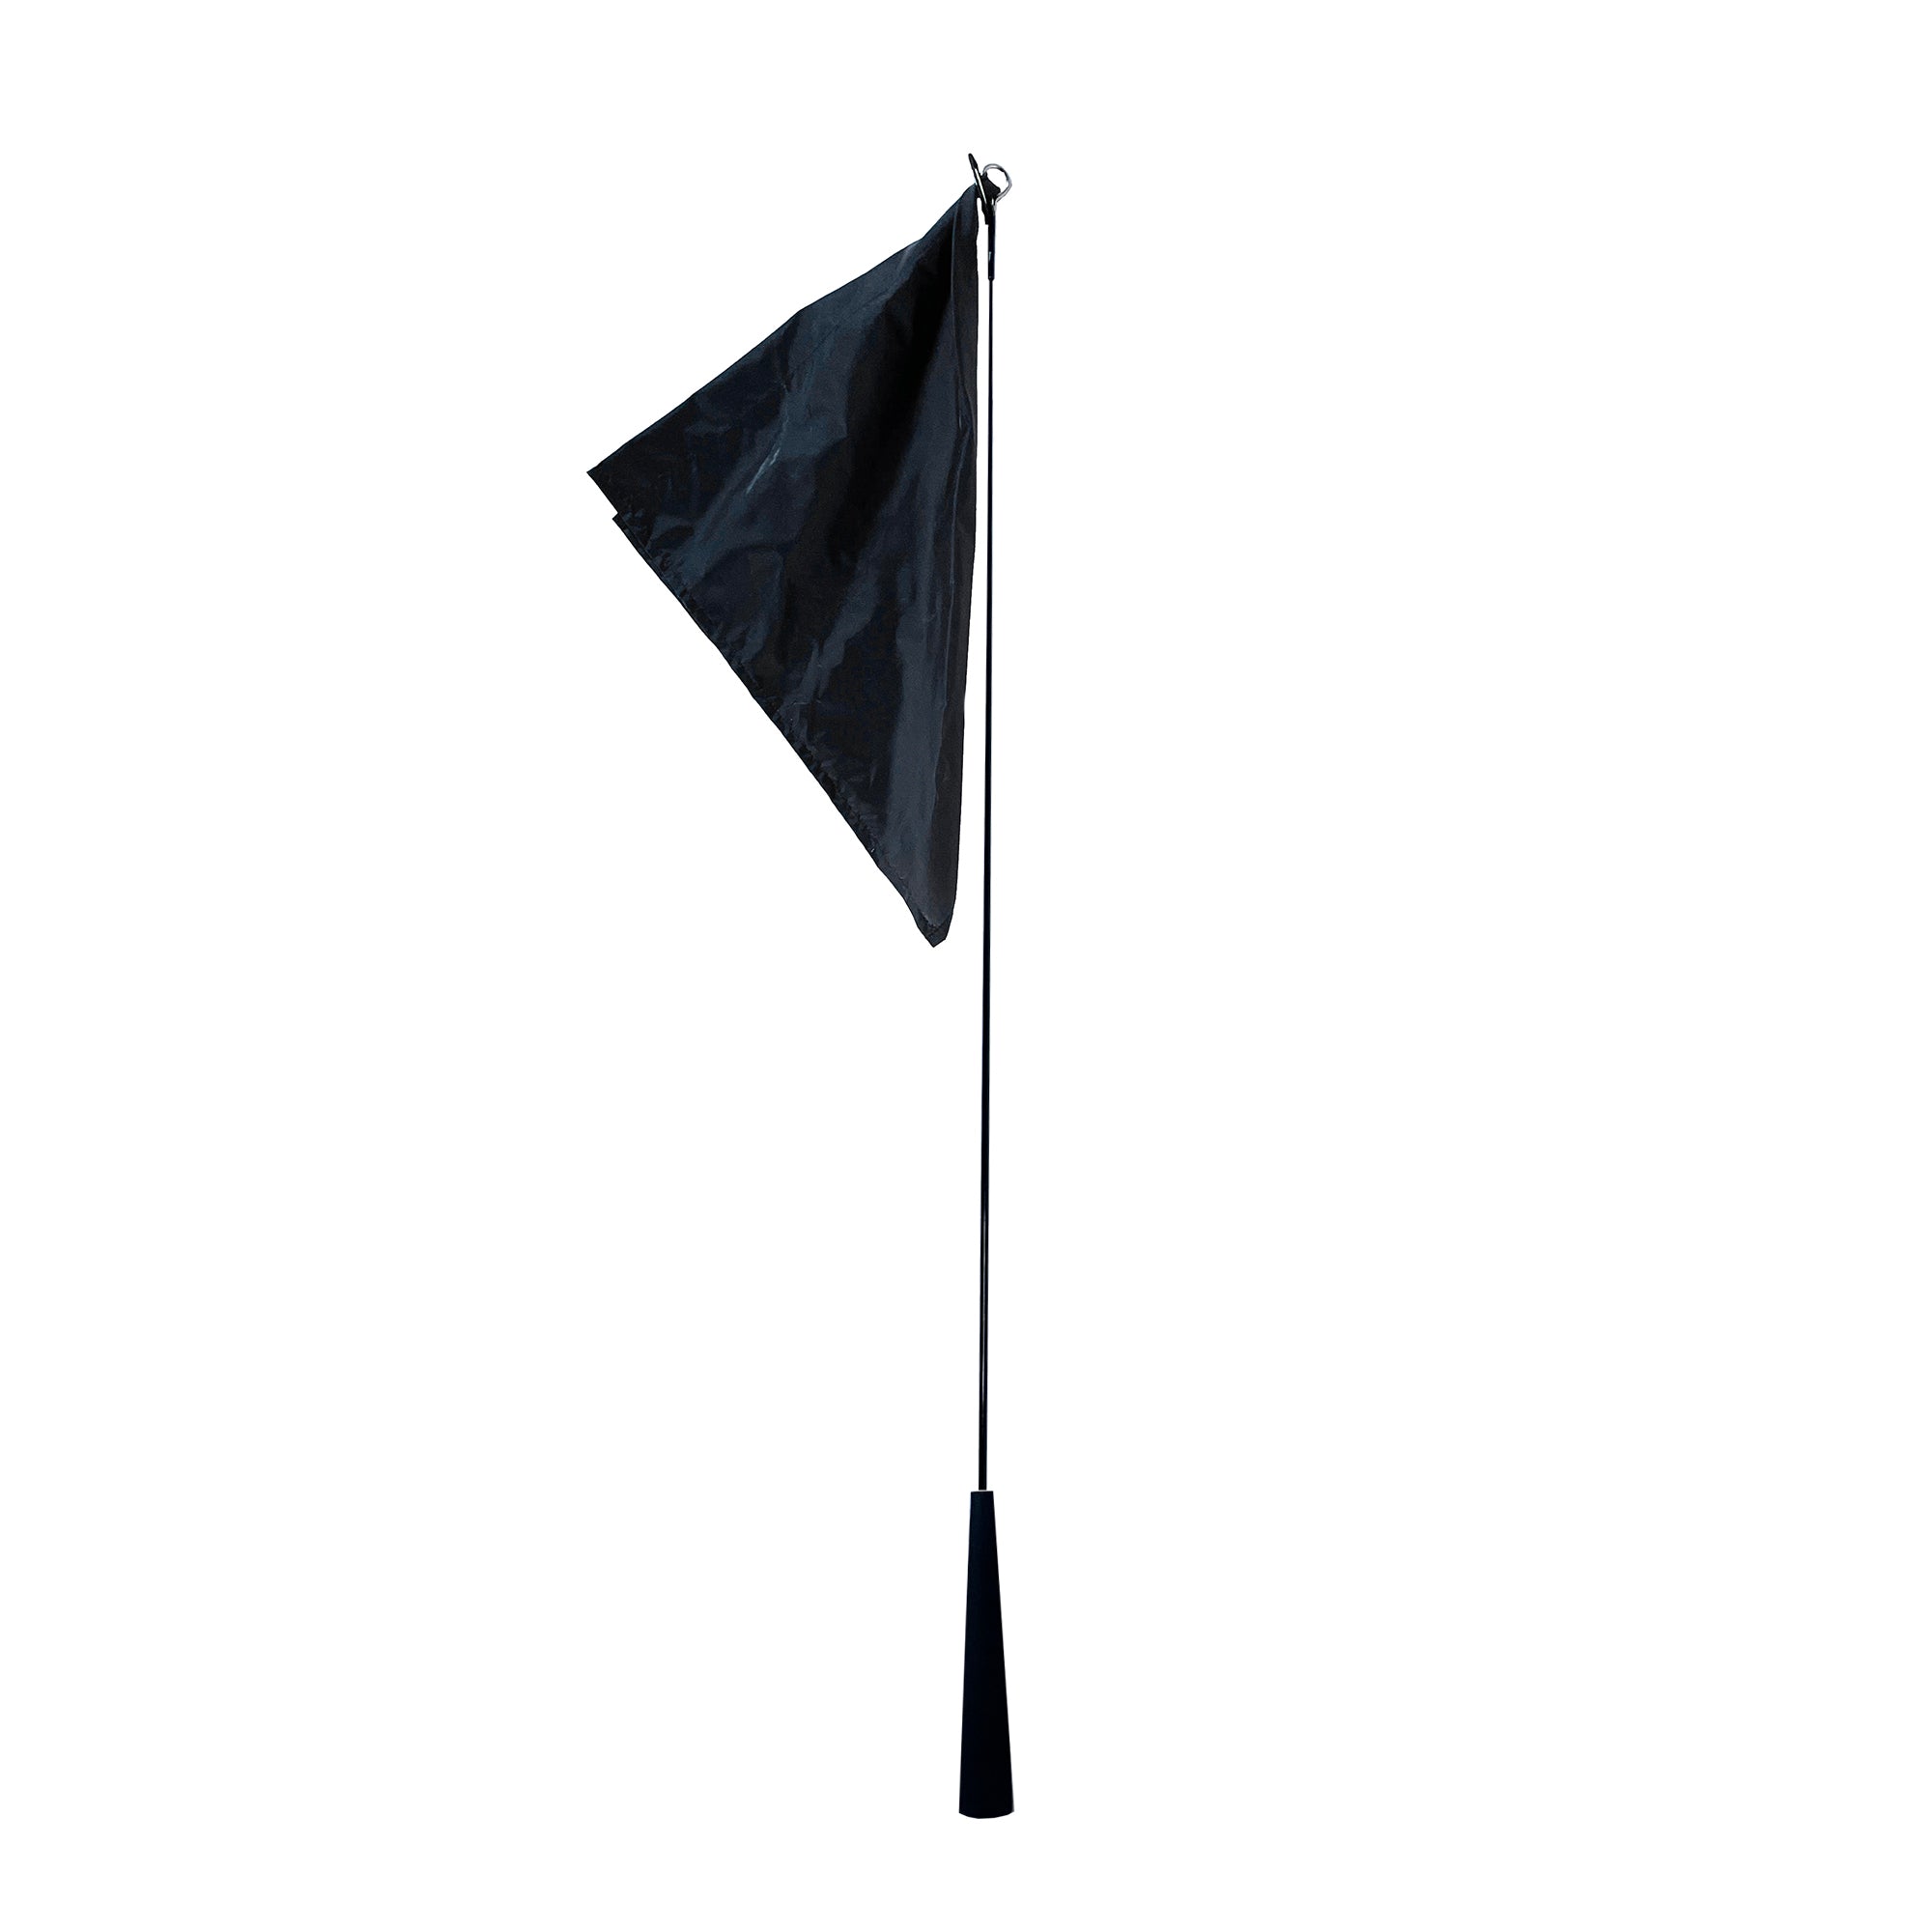 Total Horsemanship Horseman's Flag with black flag square